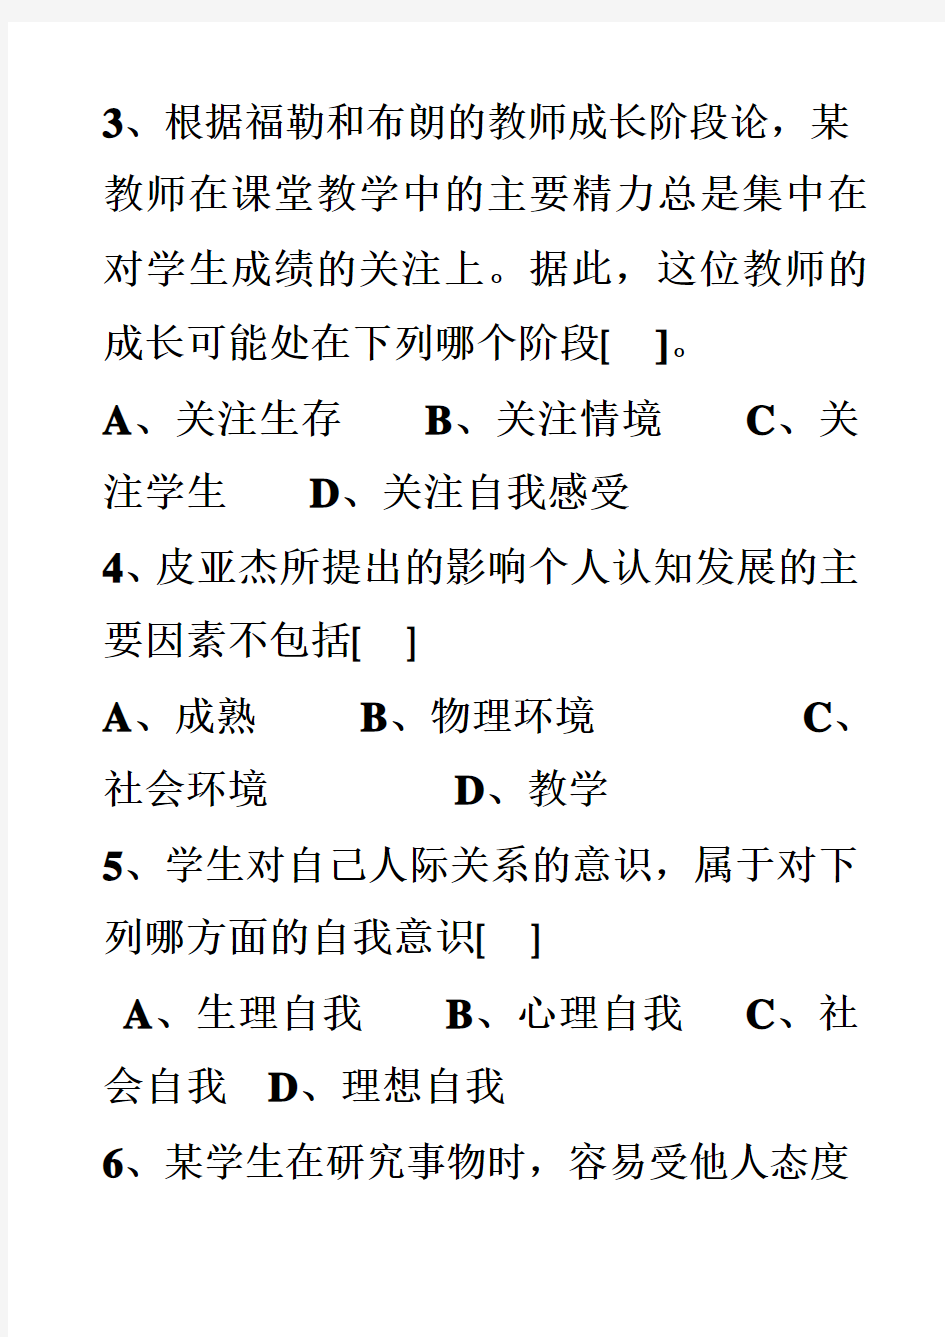 2008年湖南省中小学教师资格证中学教育心理学试卷